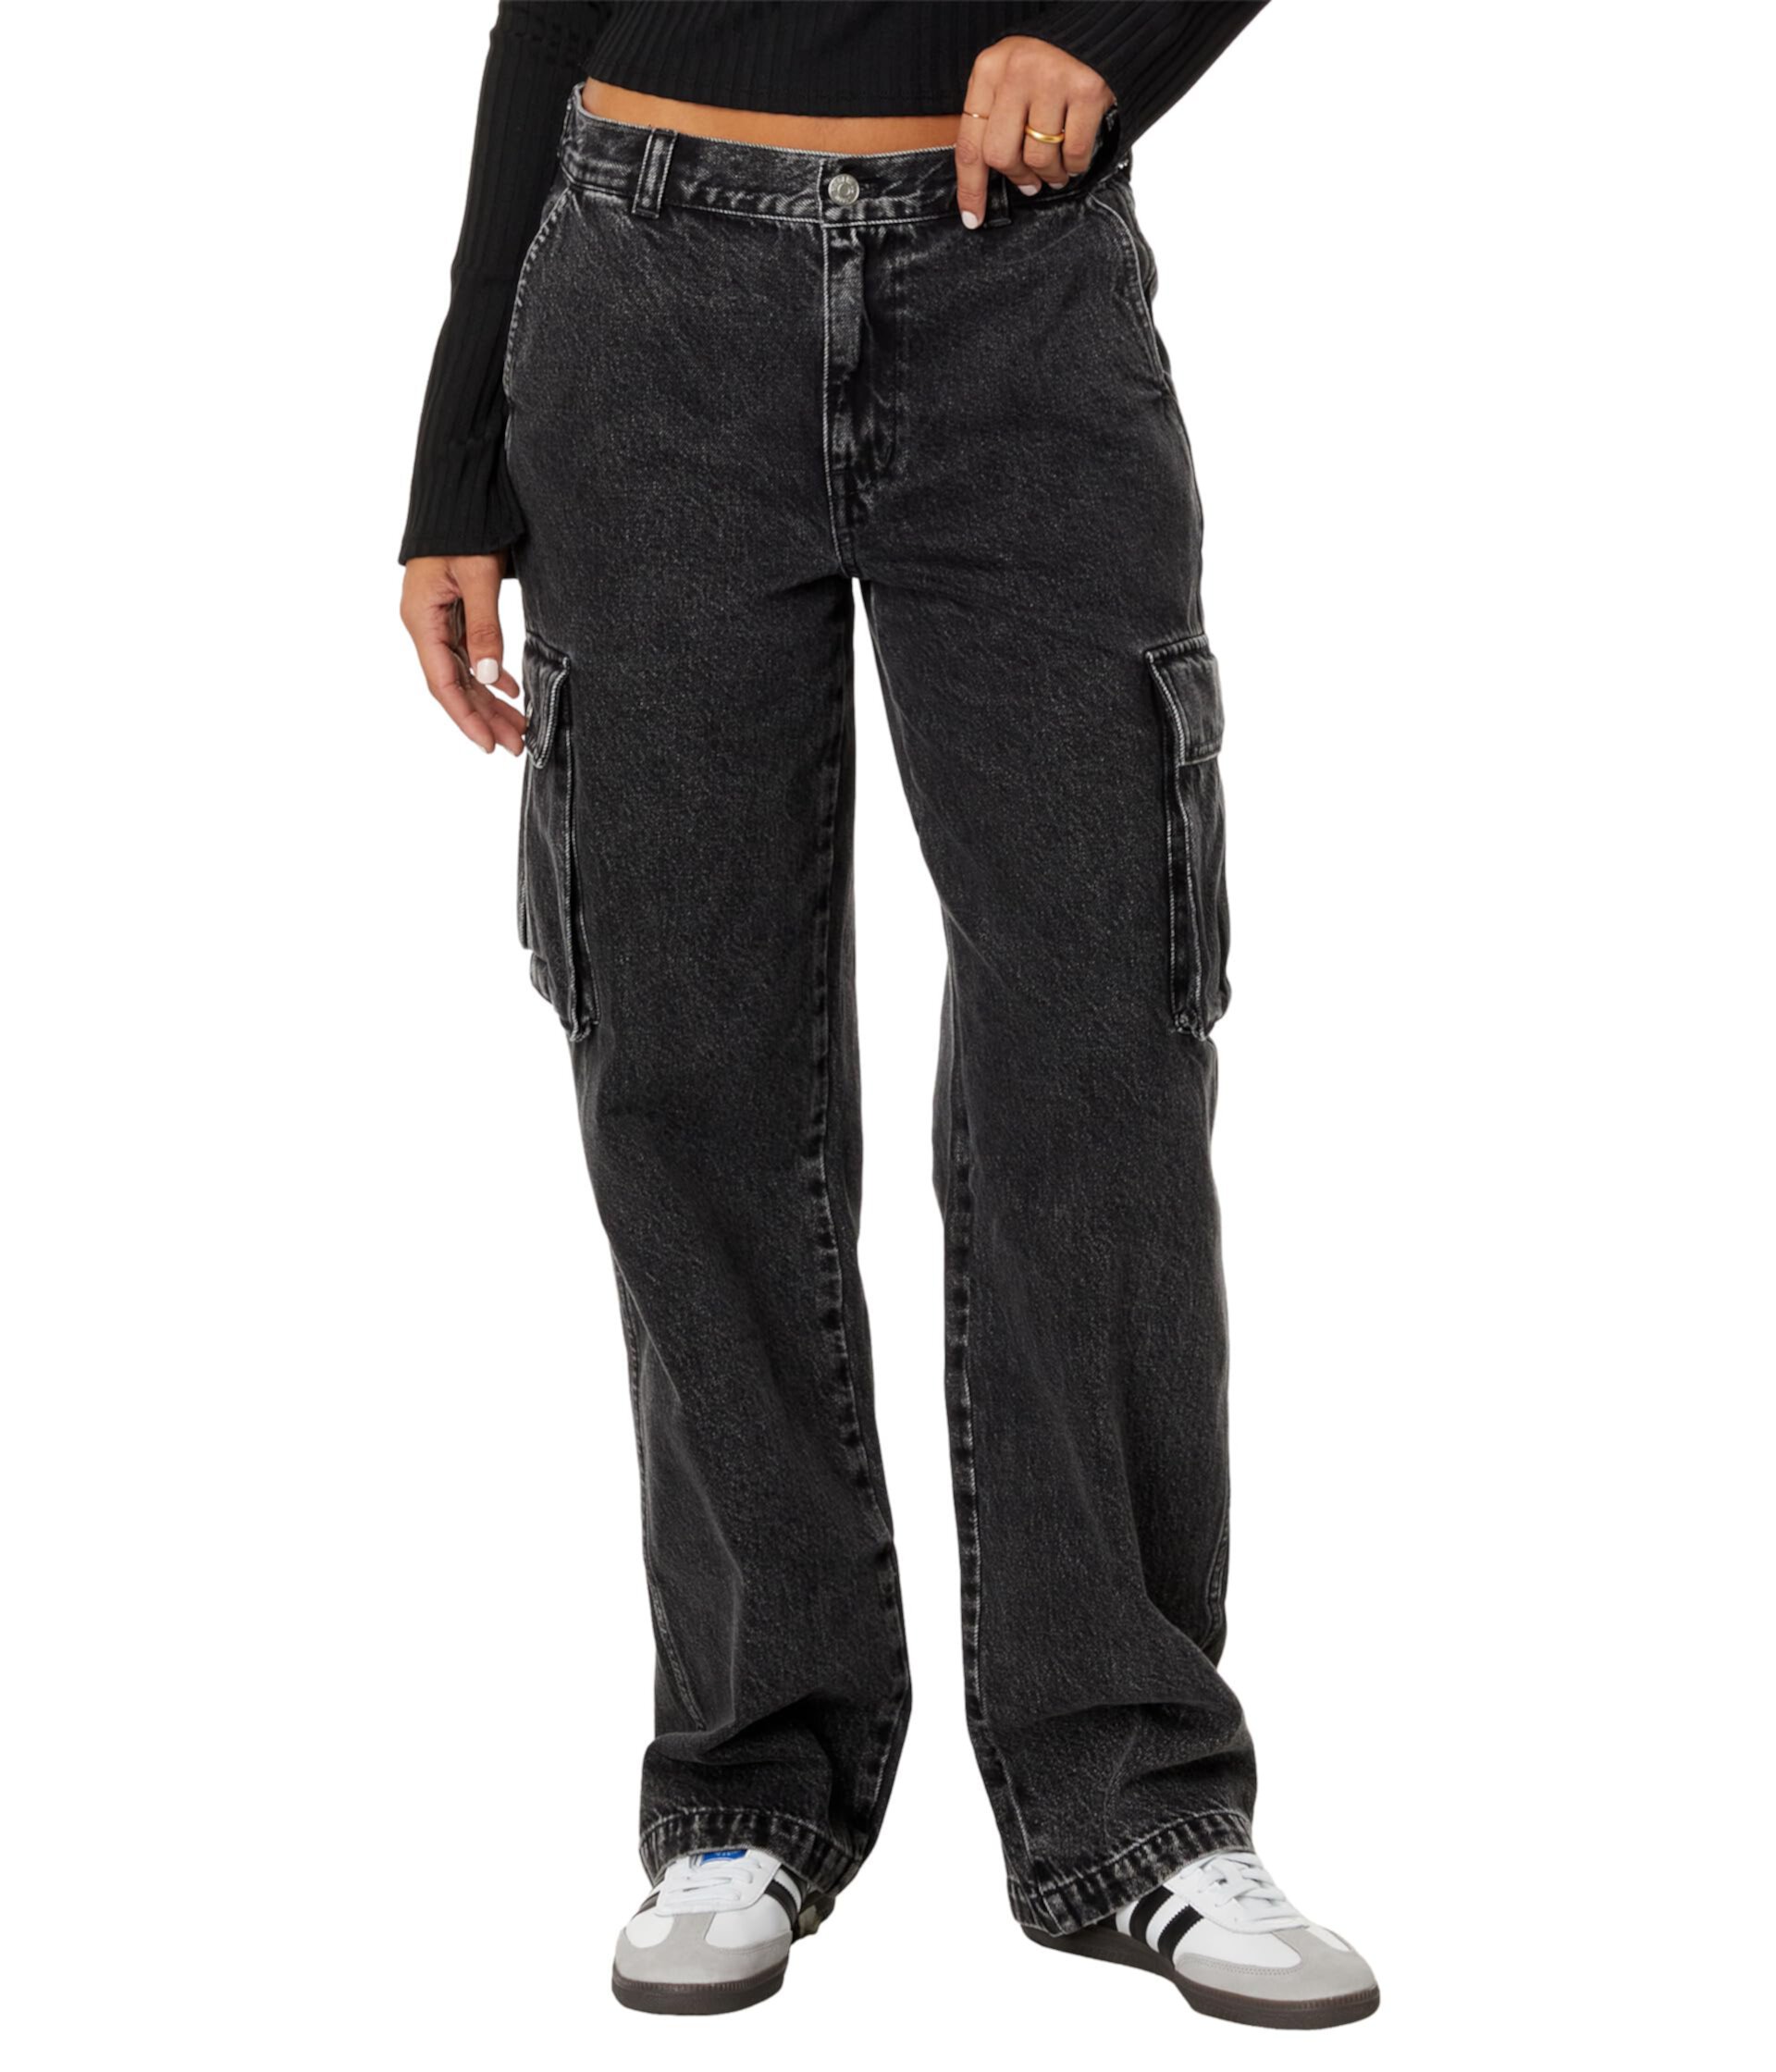 Прямые джинсы карго с низкой посадкой цвета Ranney Wash Madewell